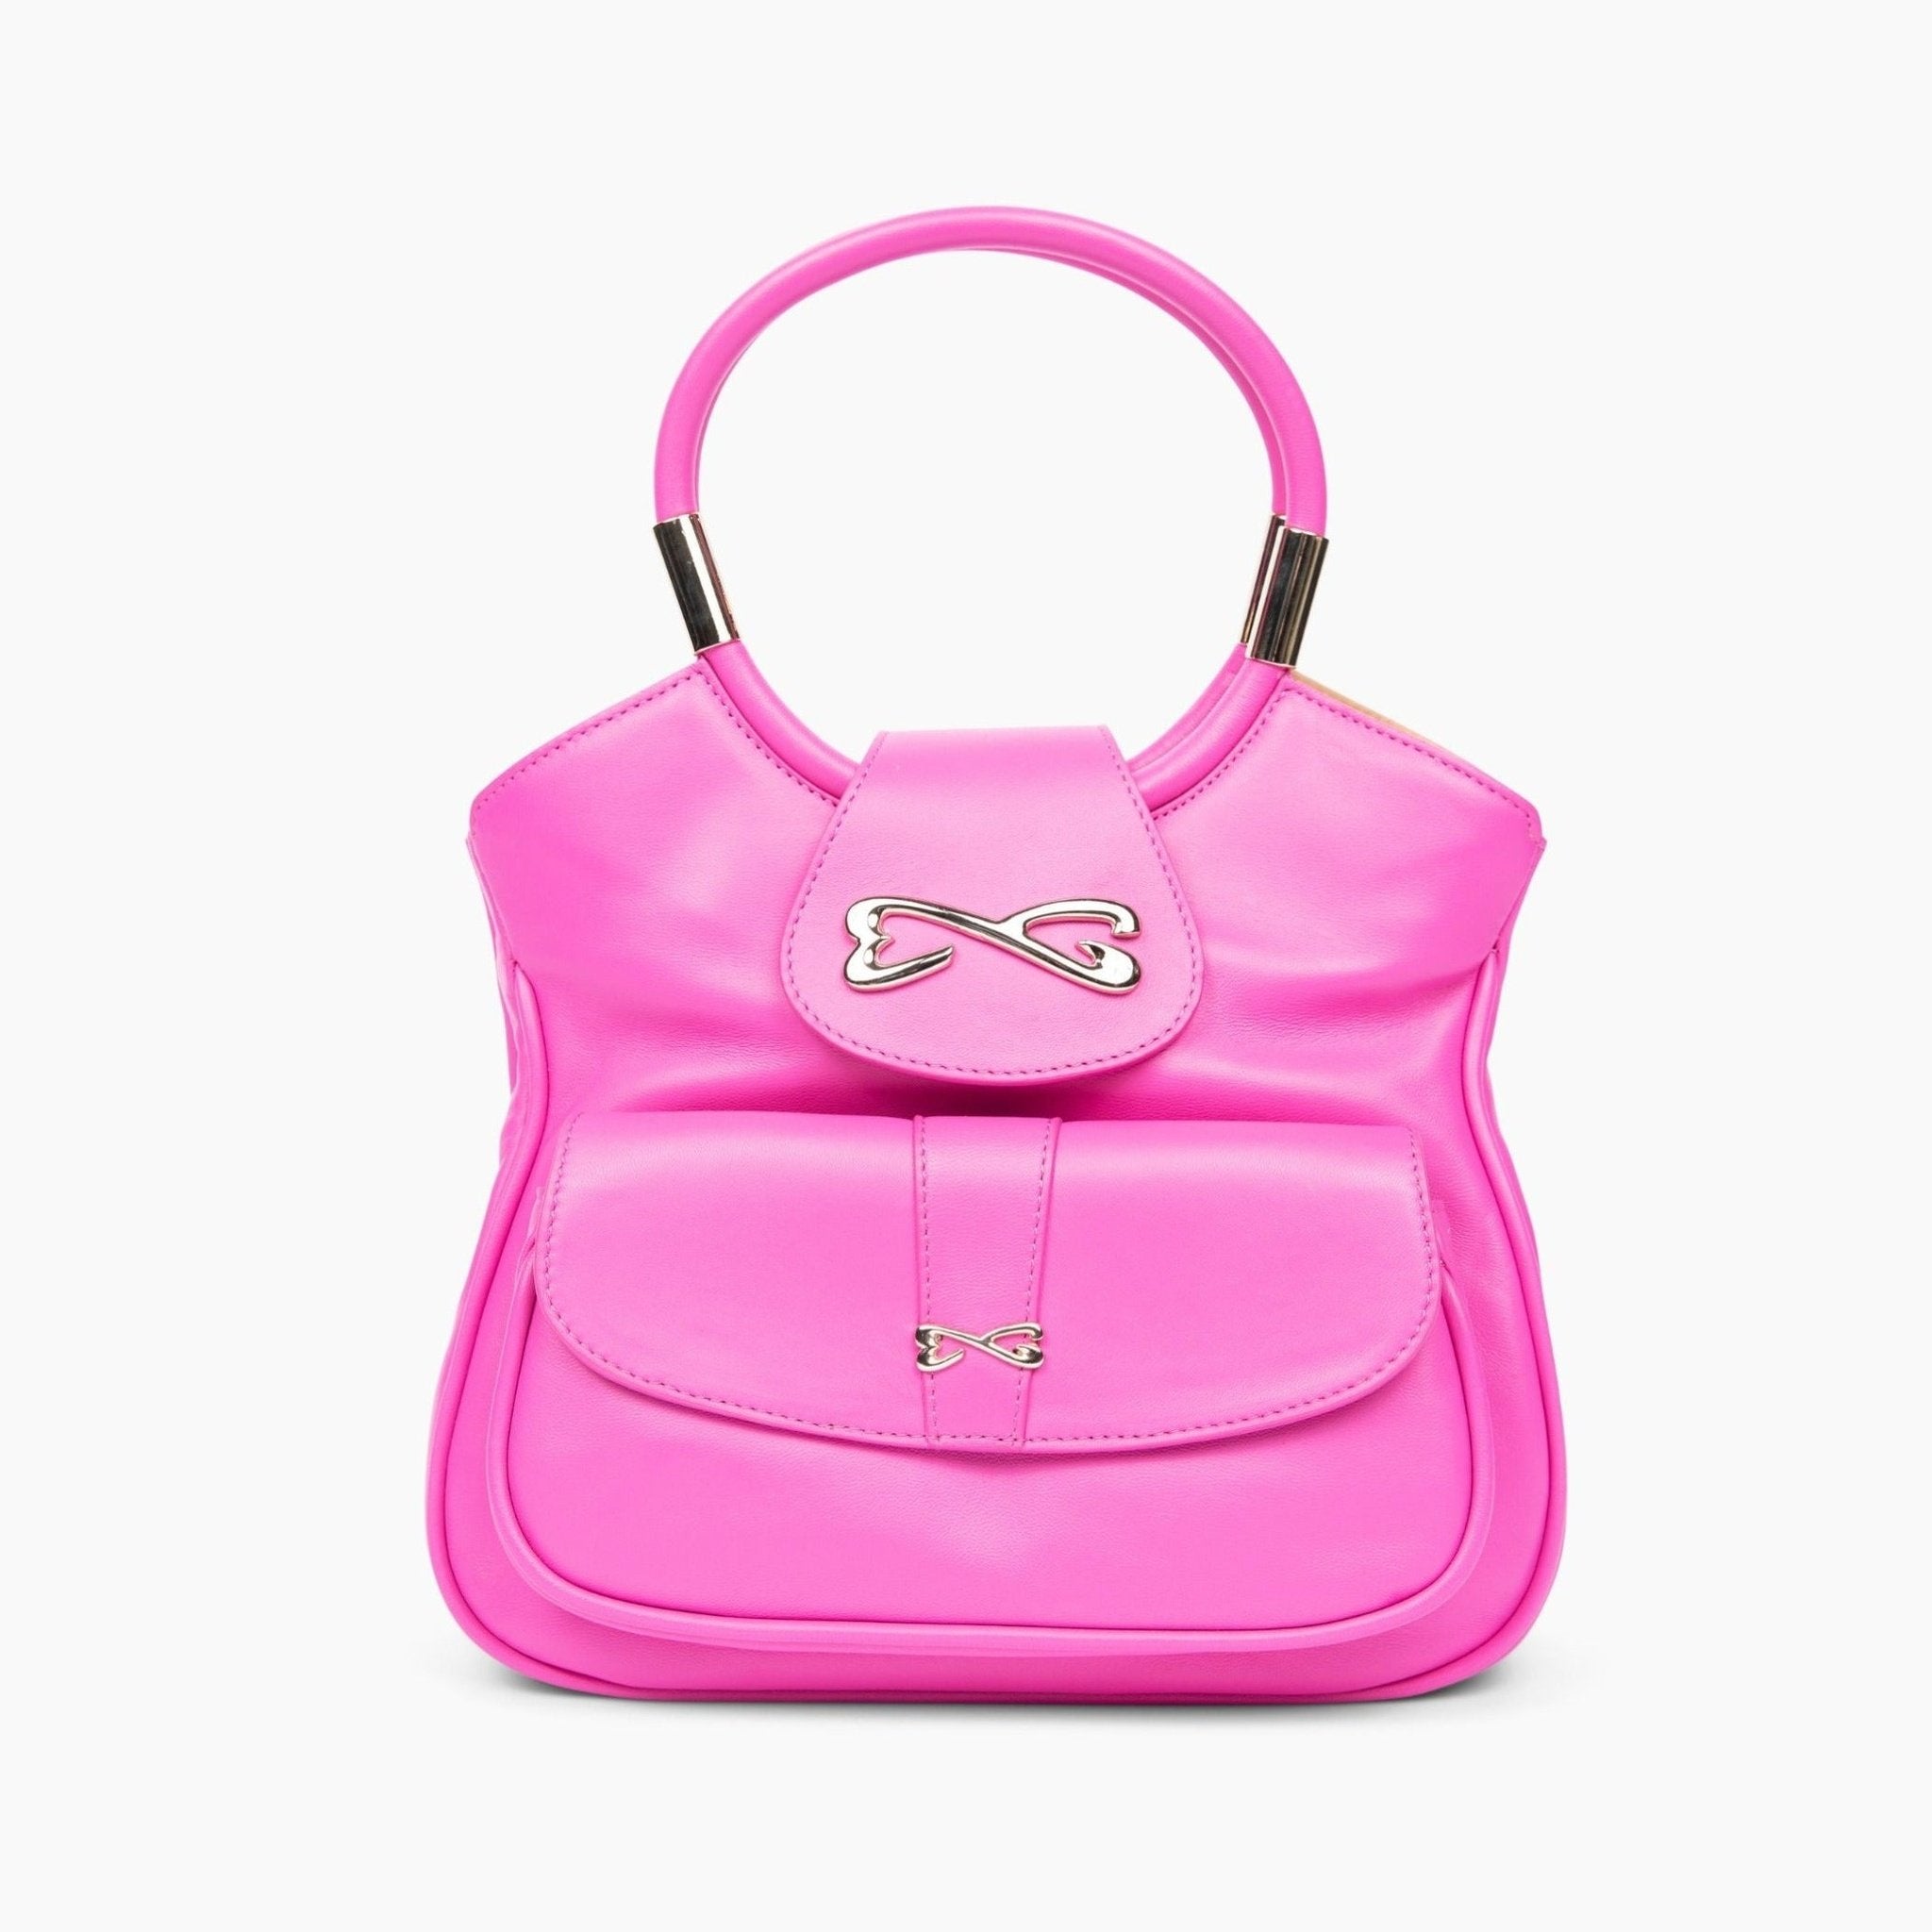 unique pink medium leather handbag